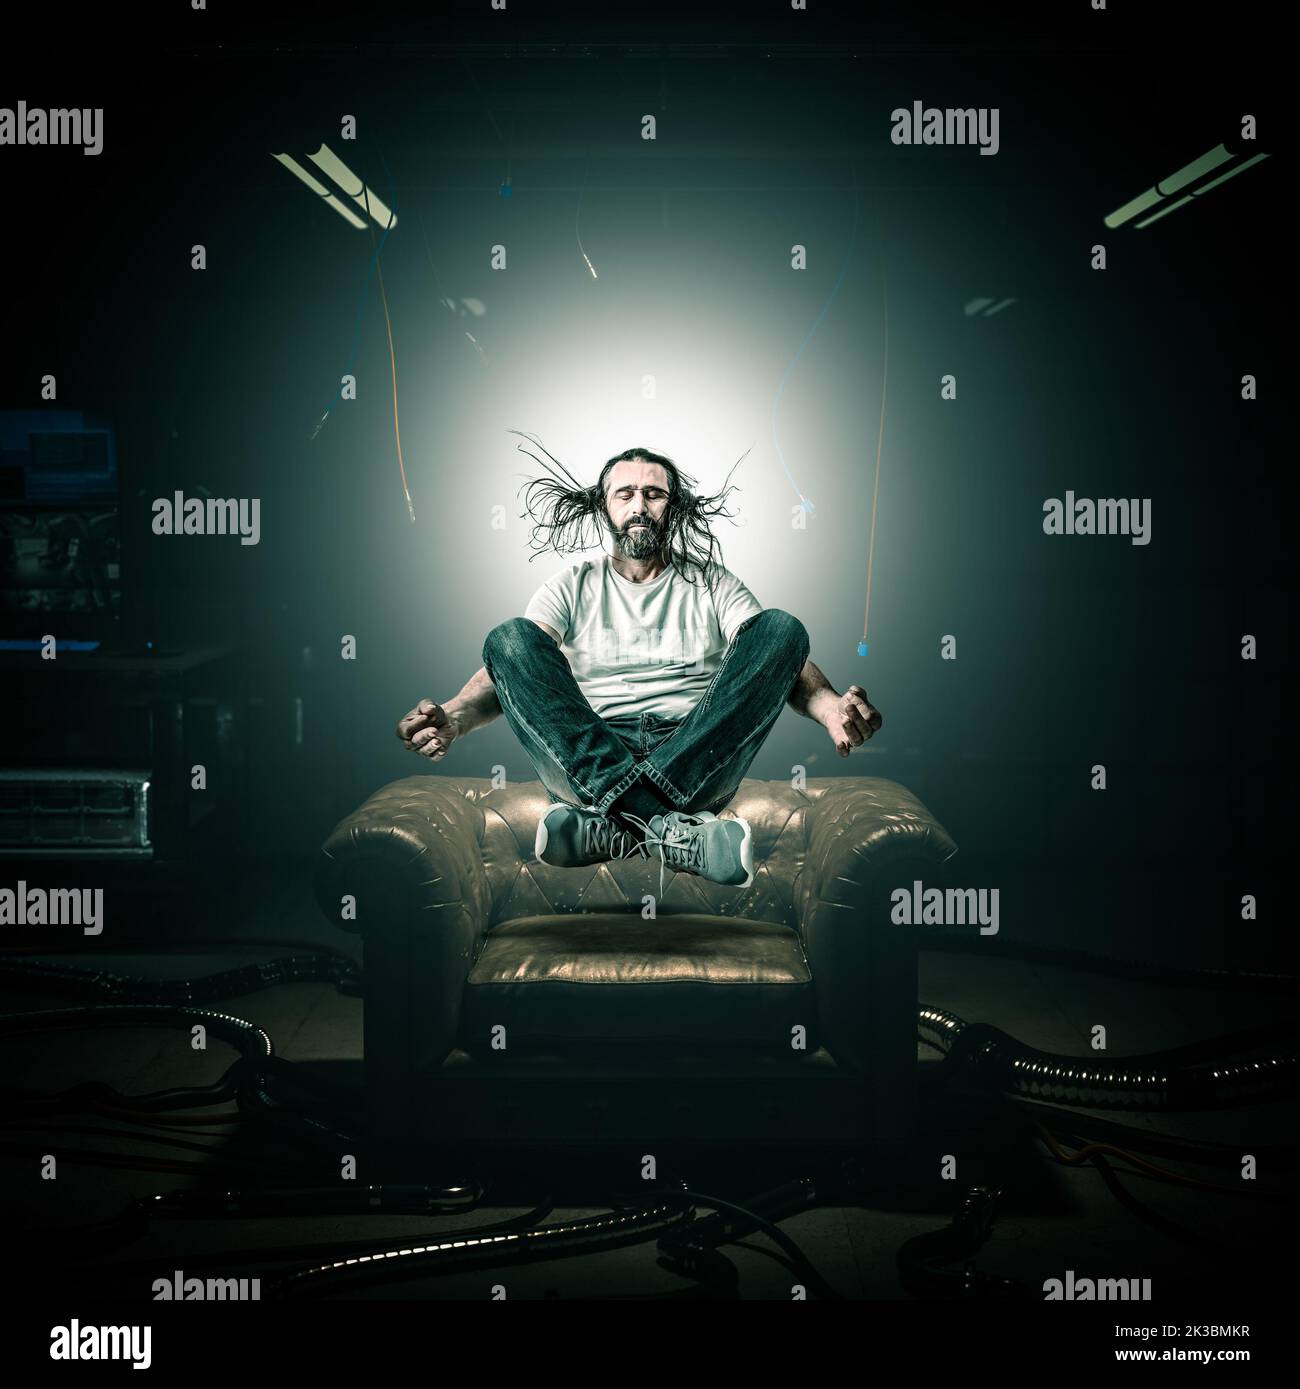 el hombre en meditación flota en el aire sobre un sillón, el fondo de la habitación de hacker Foto de stock